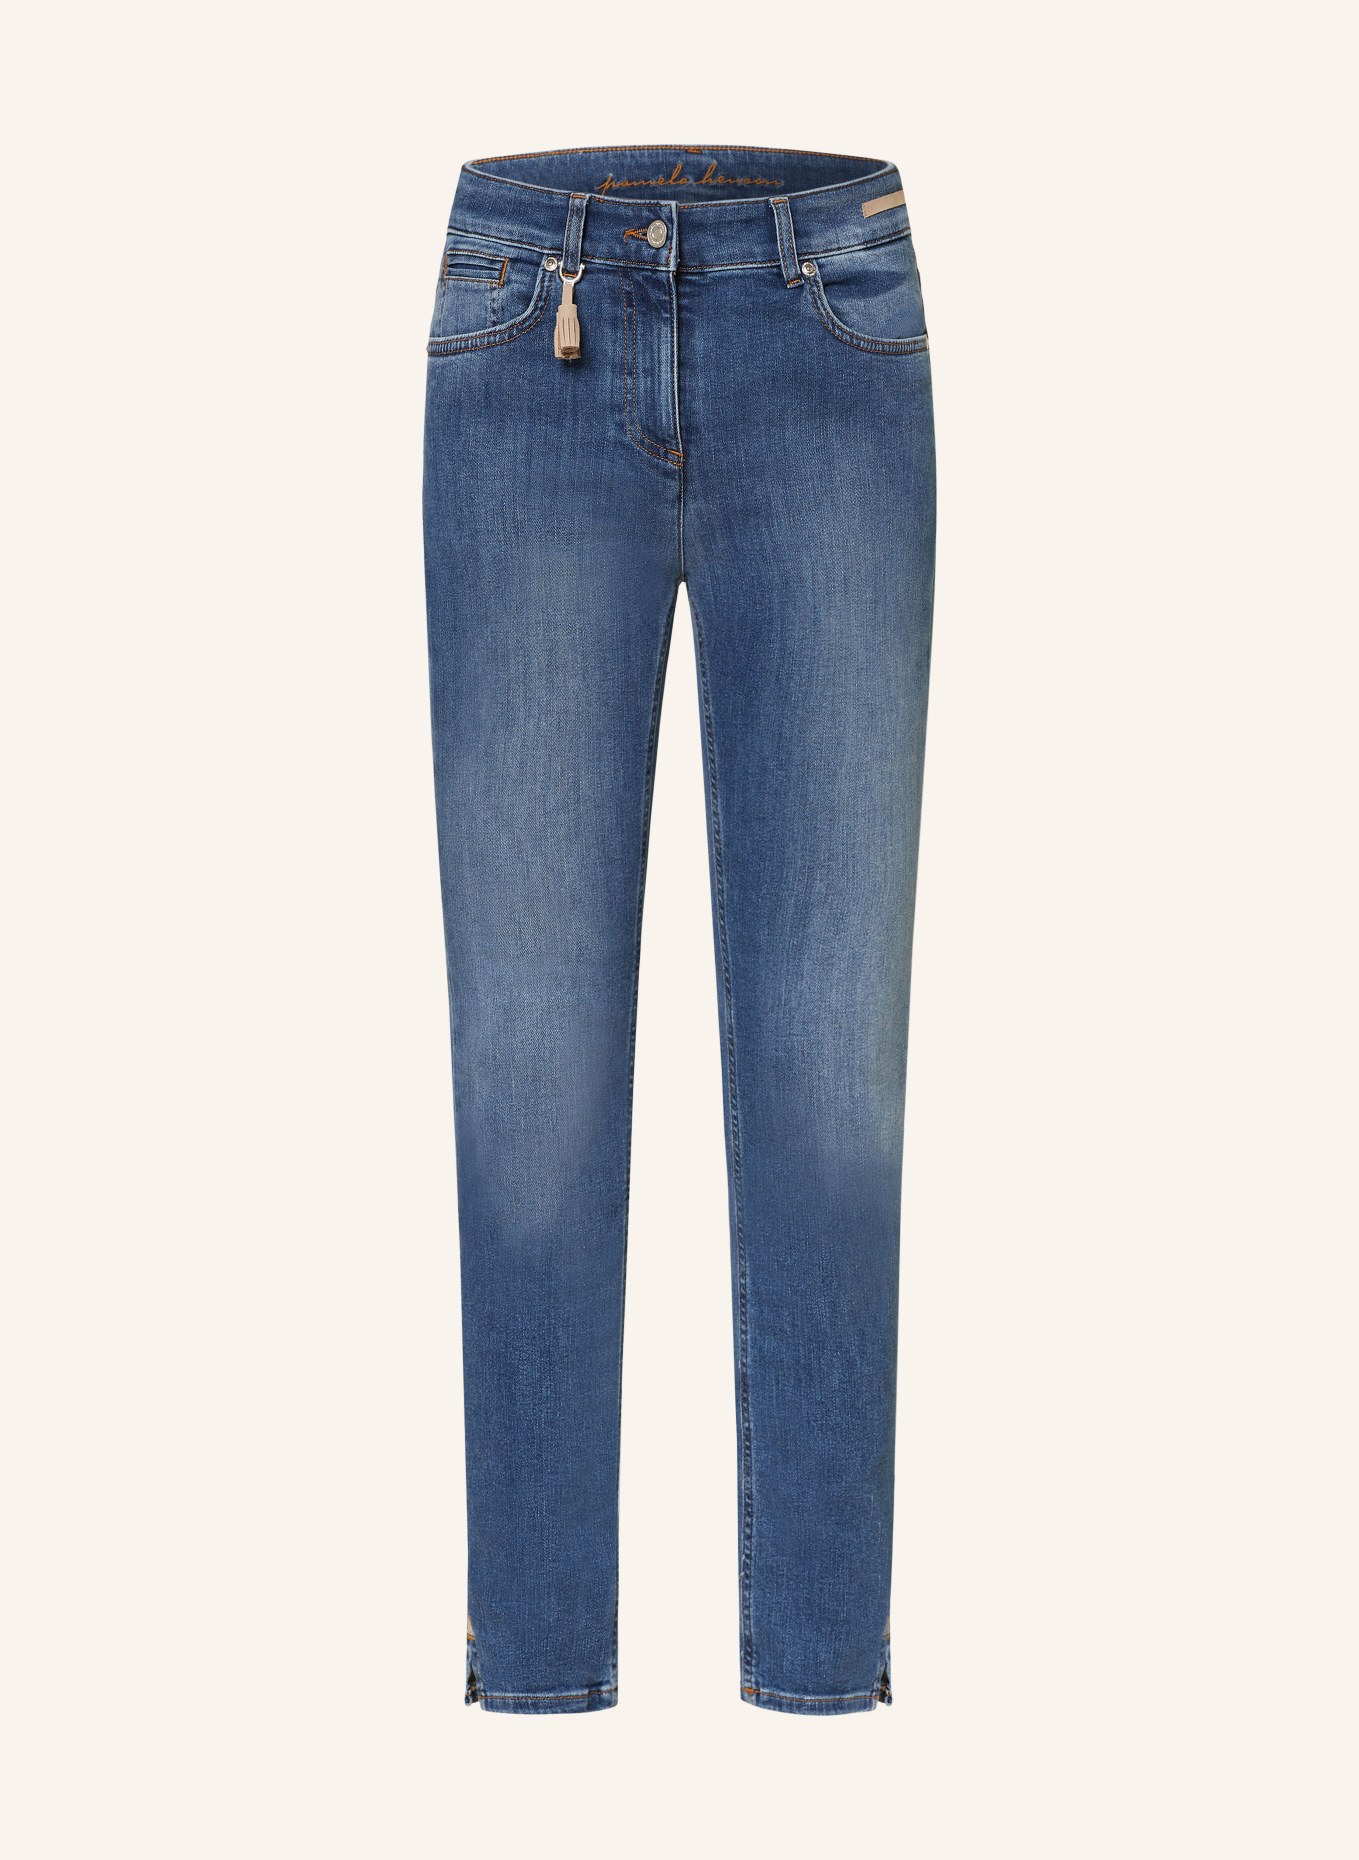 pamela henson Jeans, Color: AW1 authentic wash blau denim (Image 1)